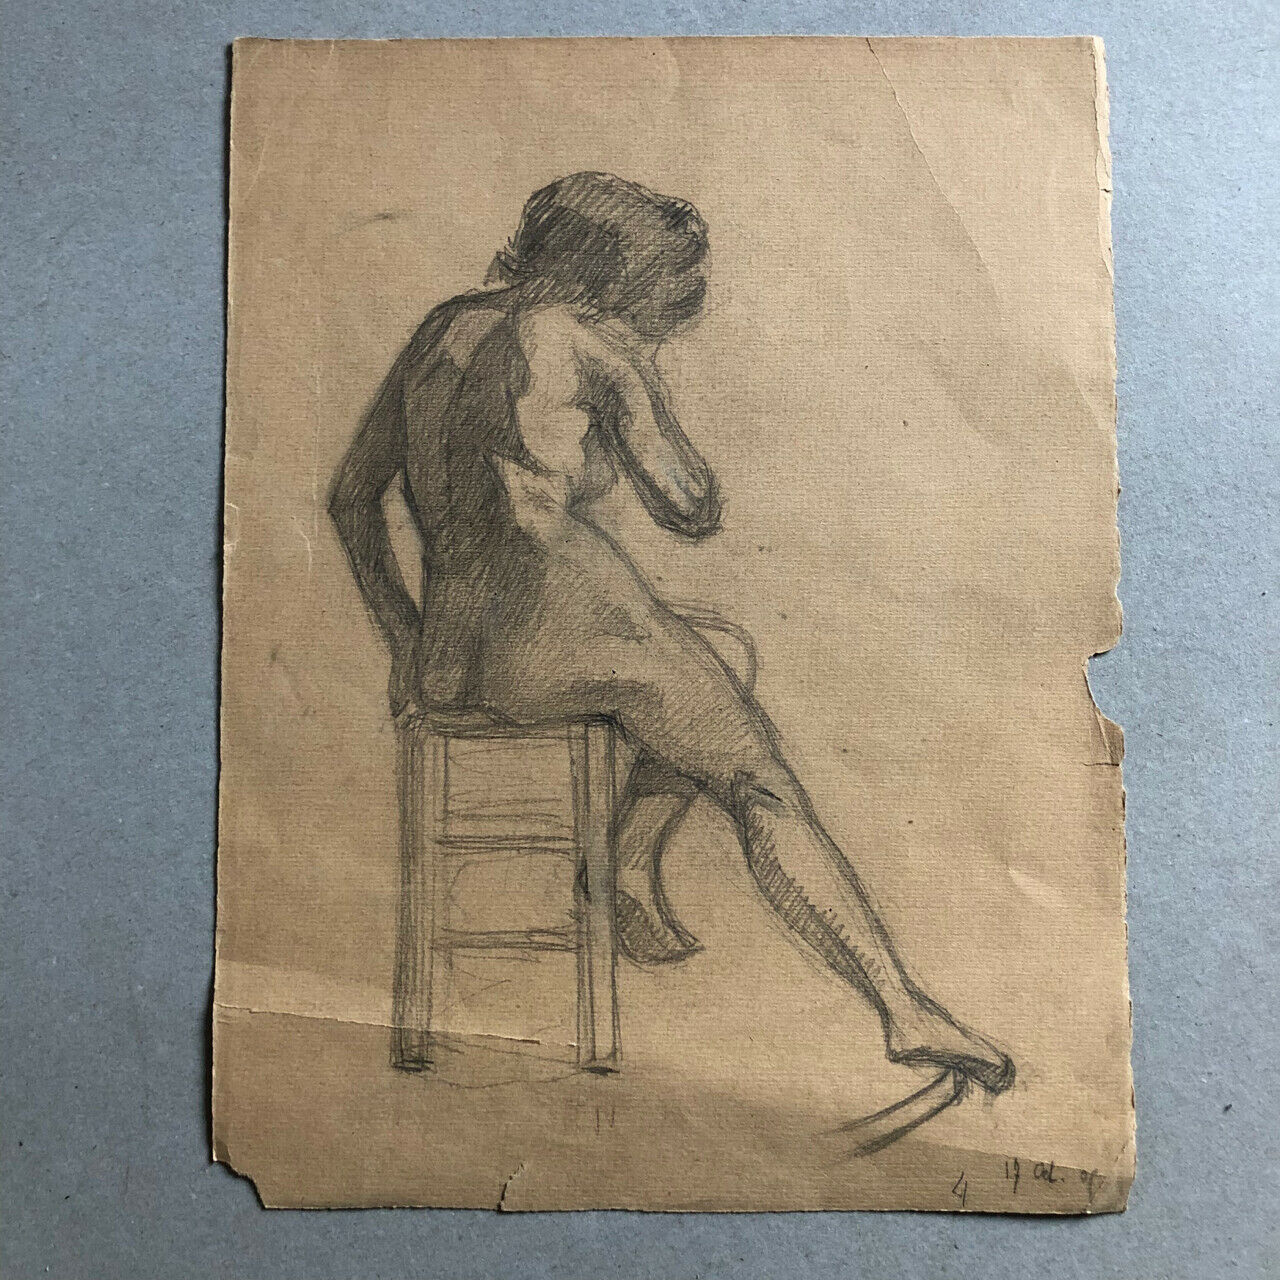 Anonyme — études de nu féminin — mine de plomb sur papier — 1905 — 32x25 cm